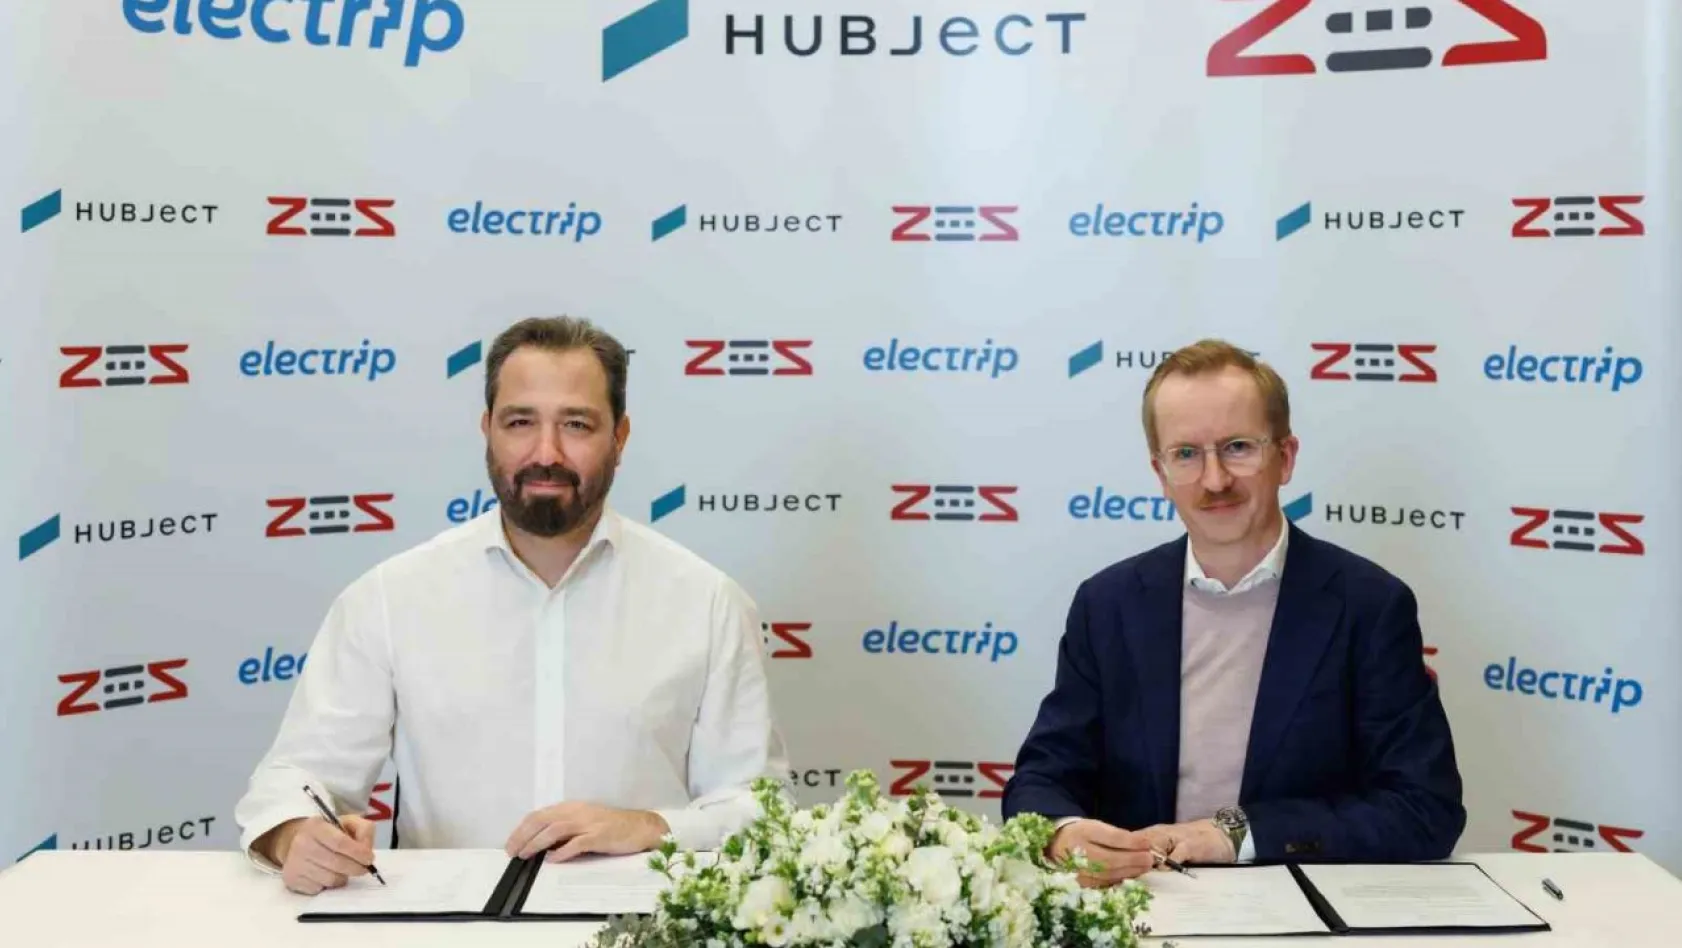 ZES ve electrip, Hubject'in küresel roaming ağına katılıyor